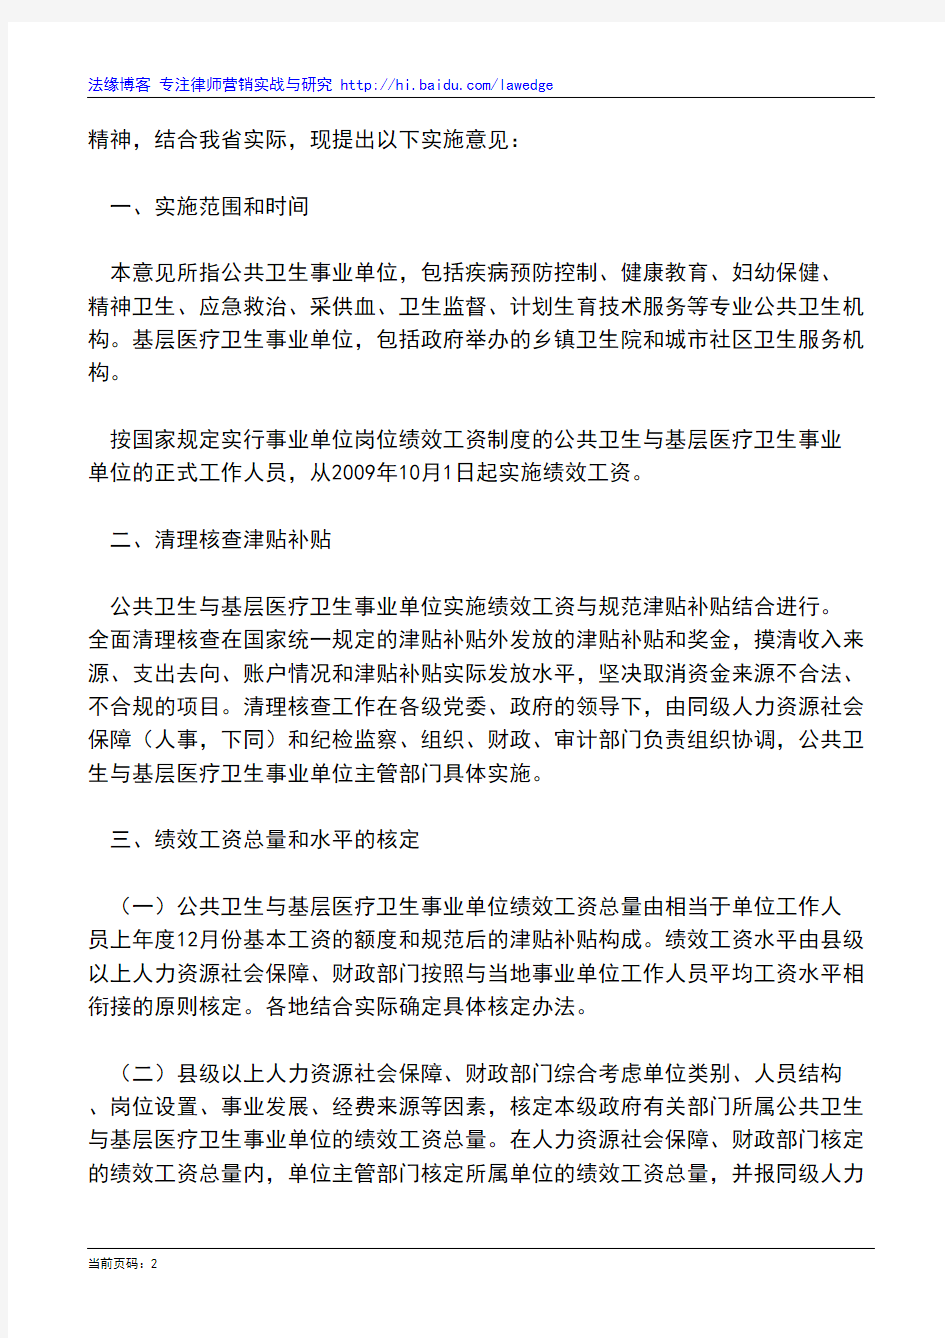 河南省人民政府办公厅转发河南省公共卫生与基层医疗卫生事业单位绩效工资实施意见的通知